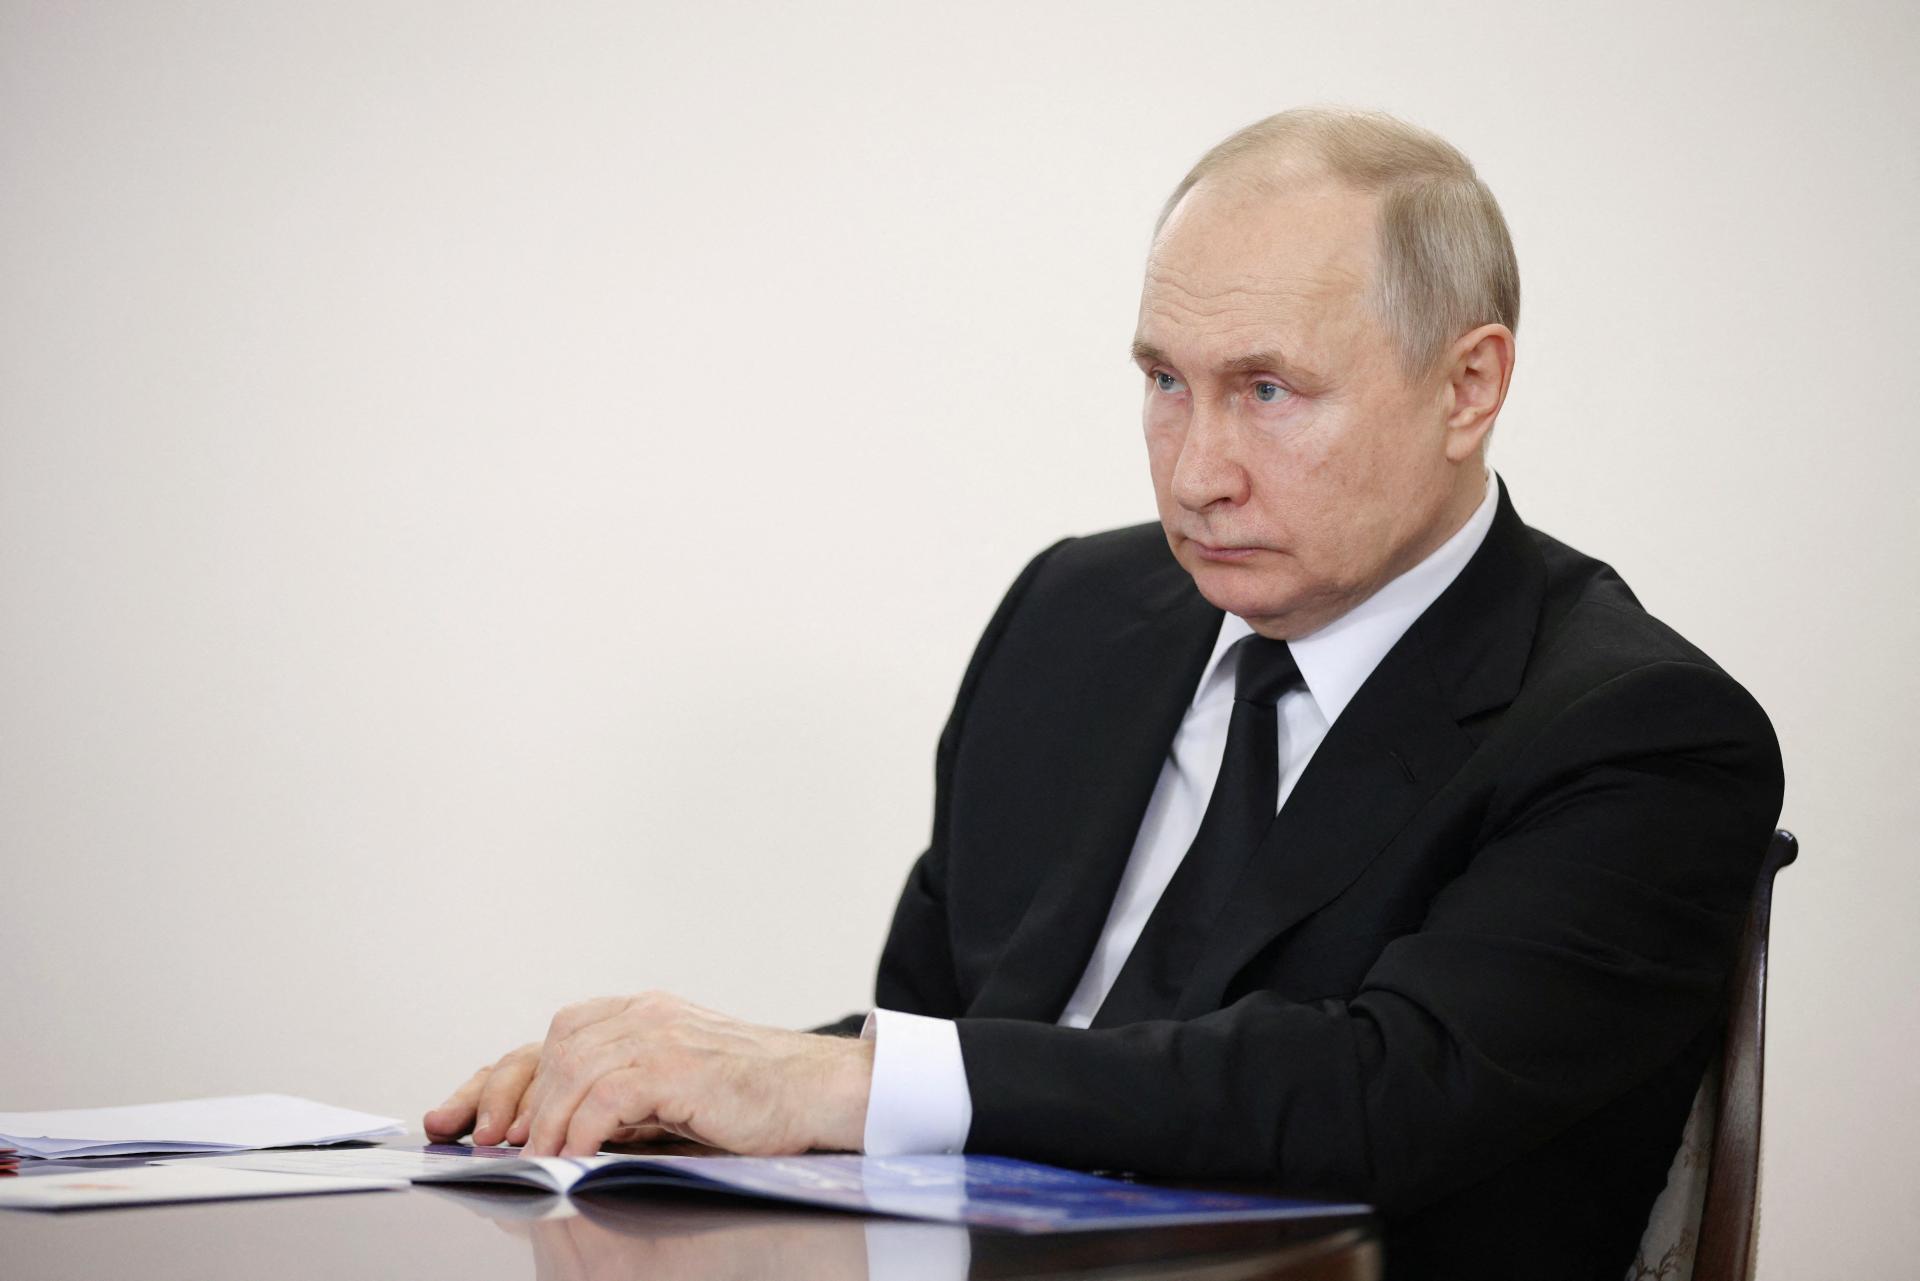 Ruská ekonomika sa vlani prepadla menej, ako jej mnohí prorokovali, tvrdí Putin